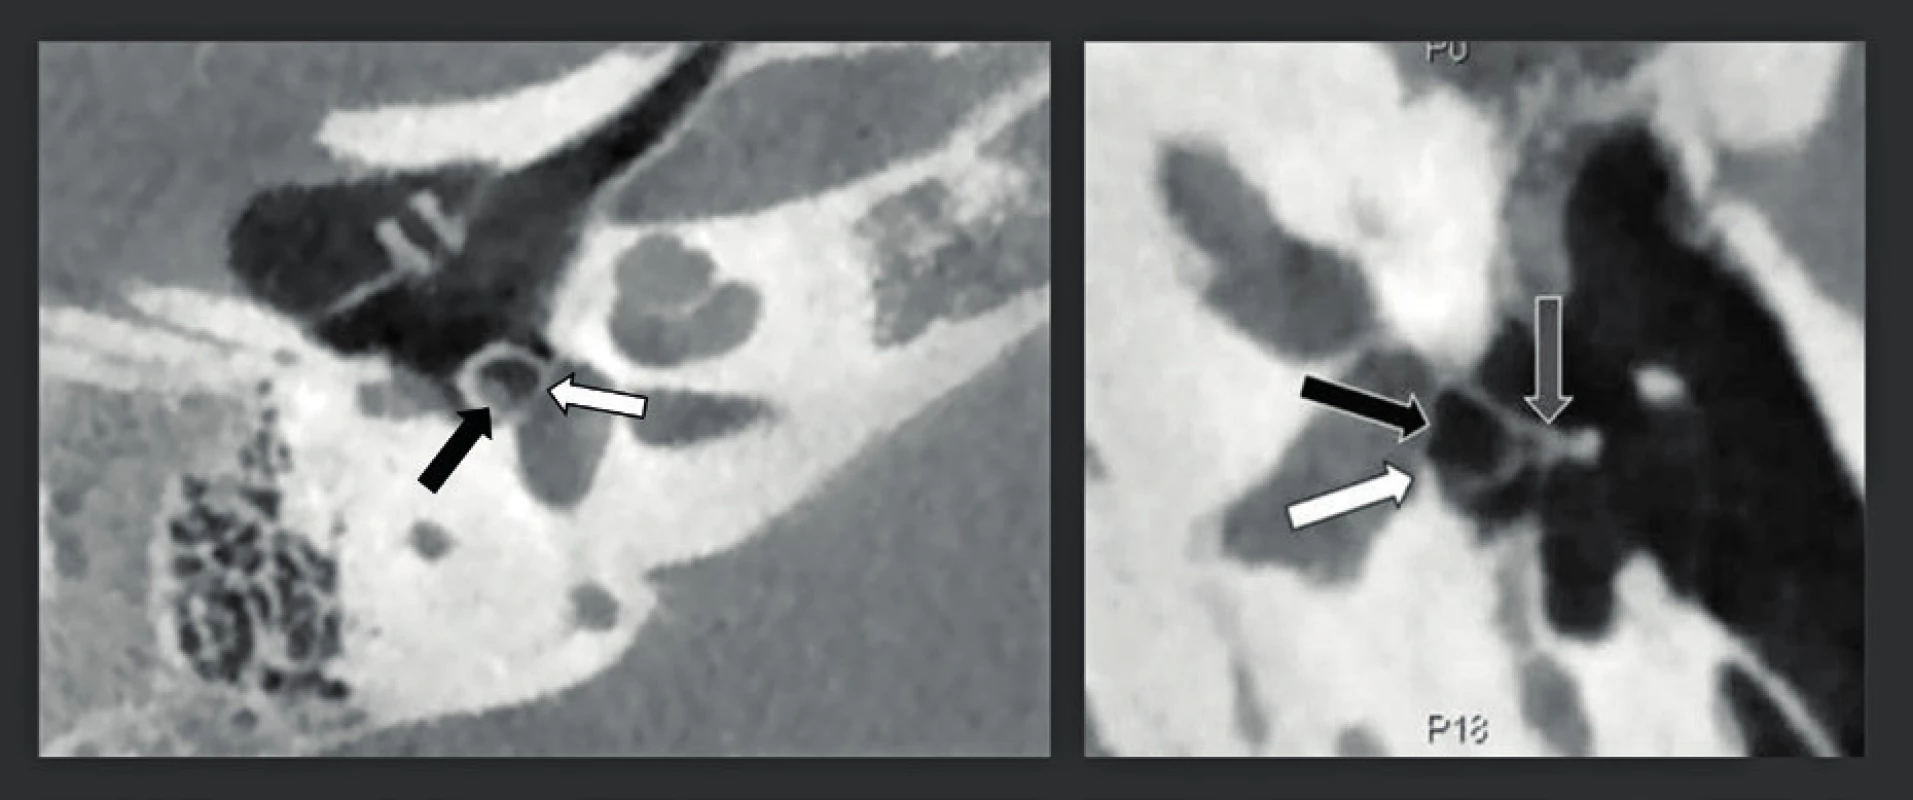 CBCT zdvojená šikmá rekonstrukce snímků středouší s vysokým rozlišením (rozlišení 150 μm) u dvou pacientů s vrozenou vadou středouší.